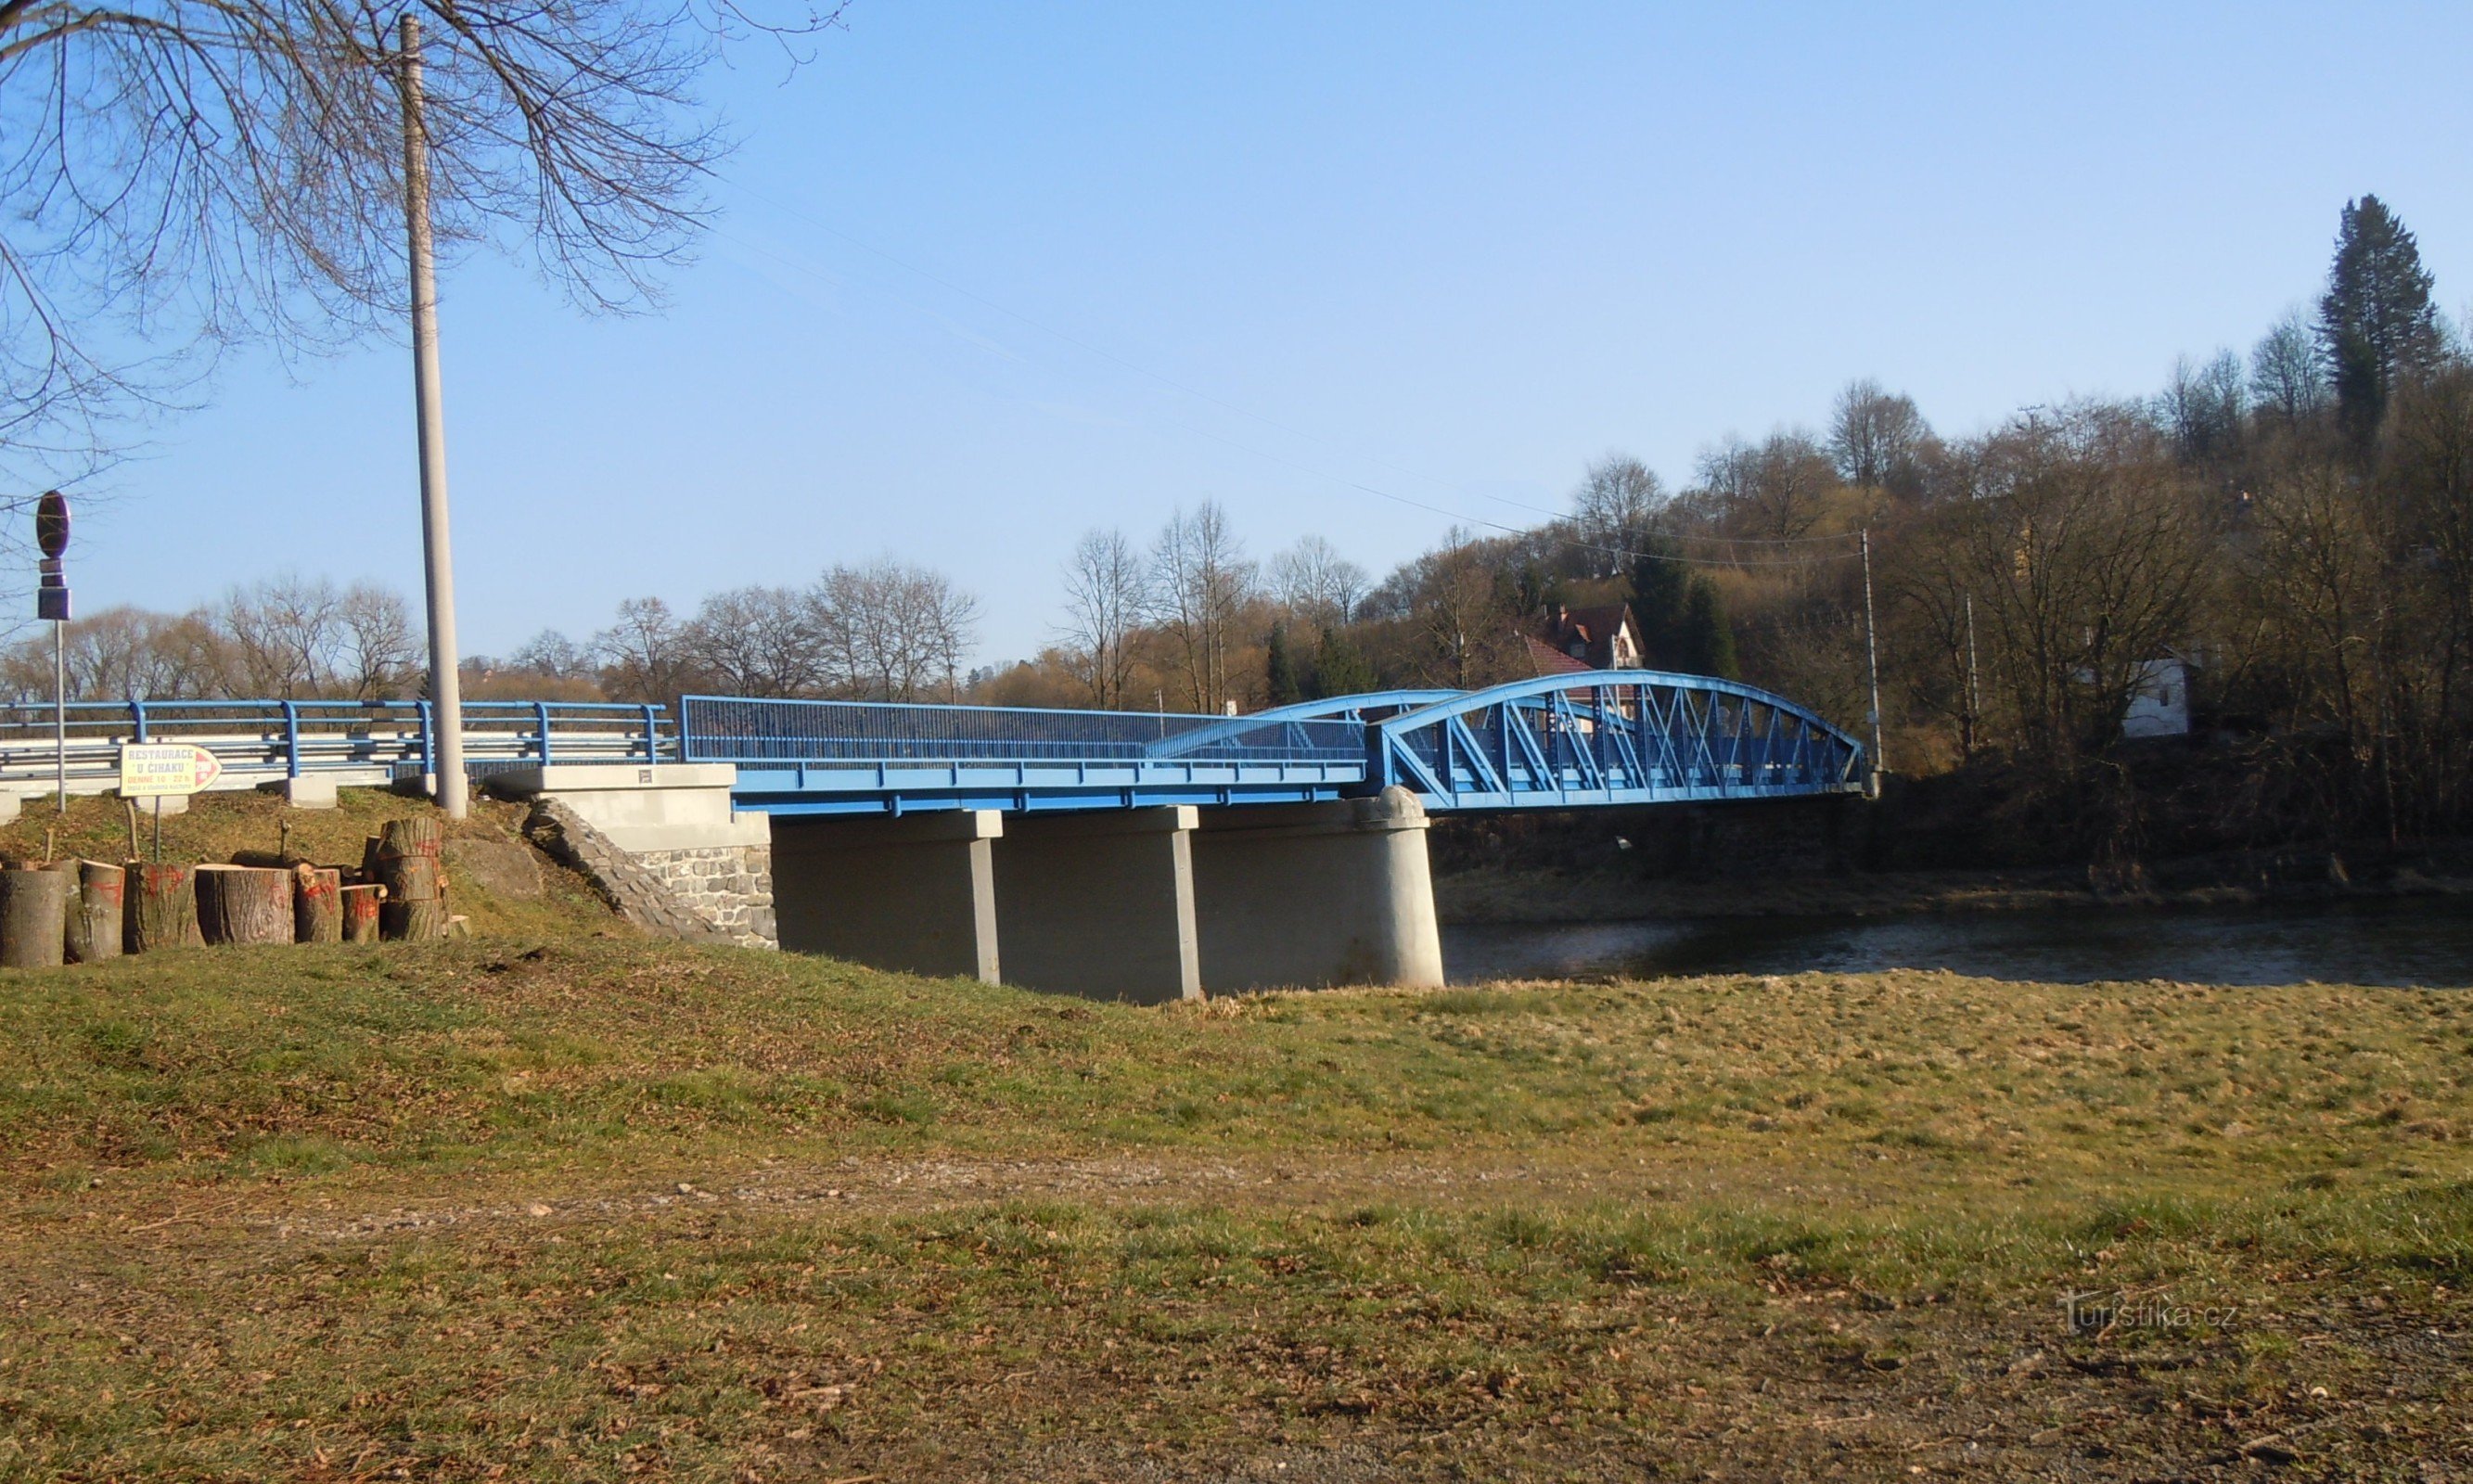 Ledečko - un pont avec un camp nautique